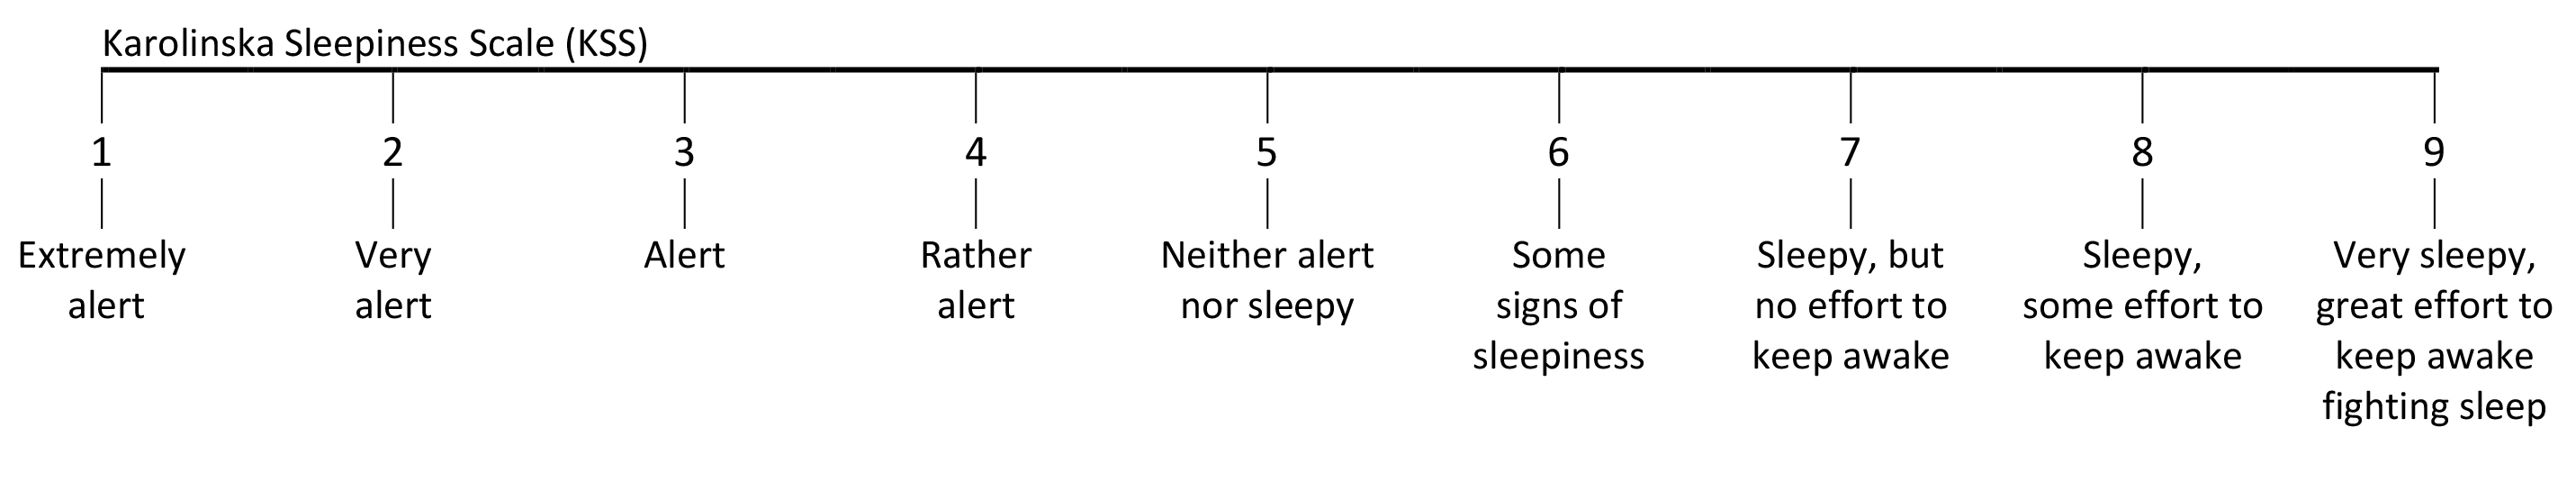 Figur Karolinska Sleepiness Scale (KSS)